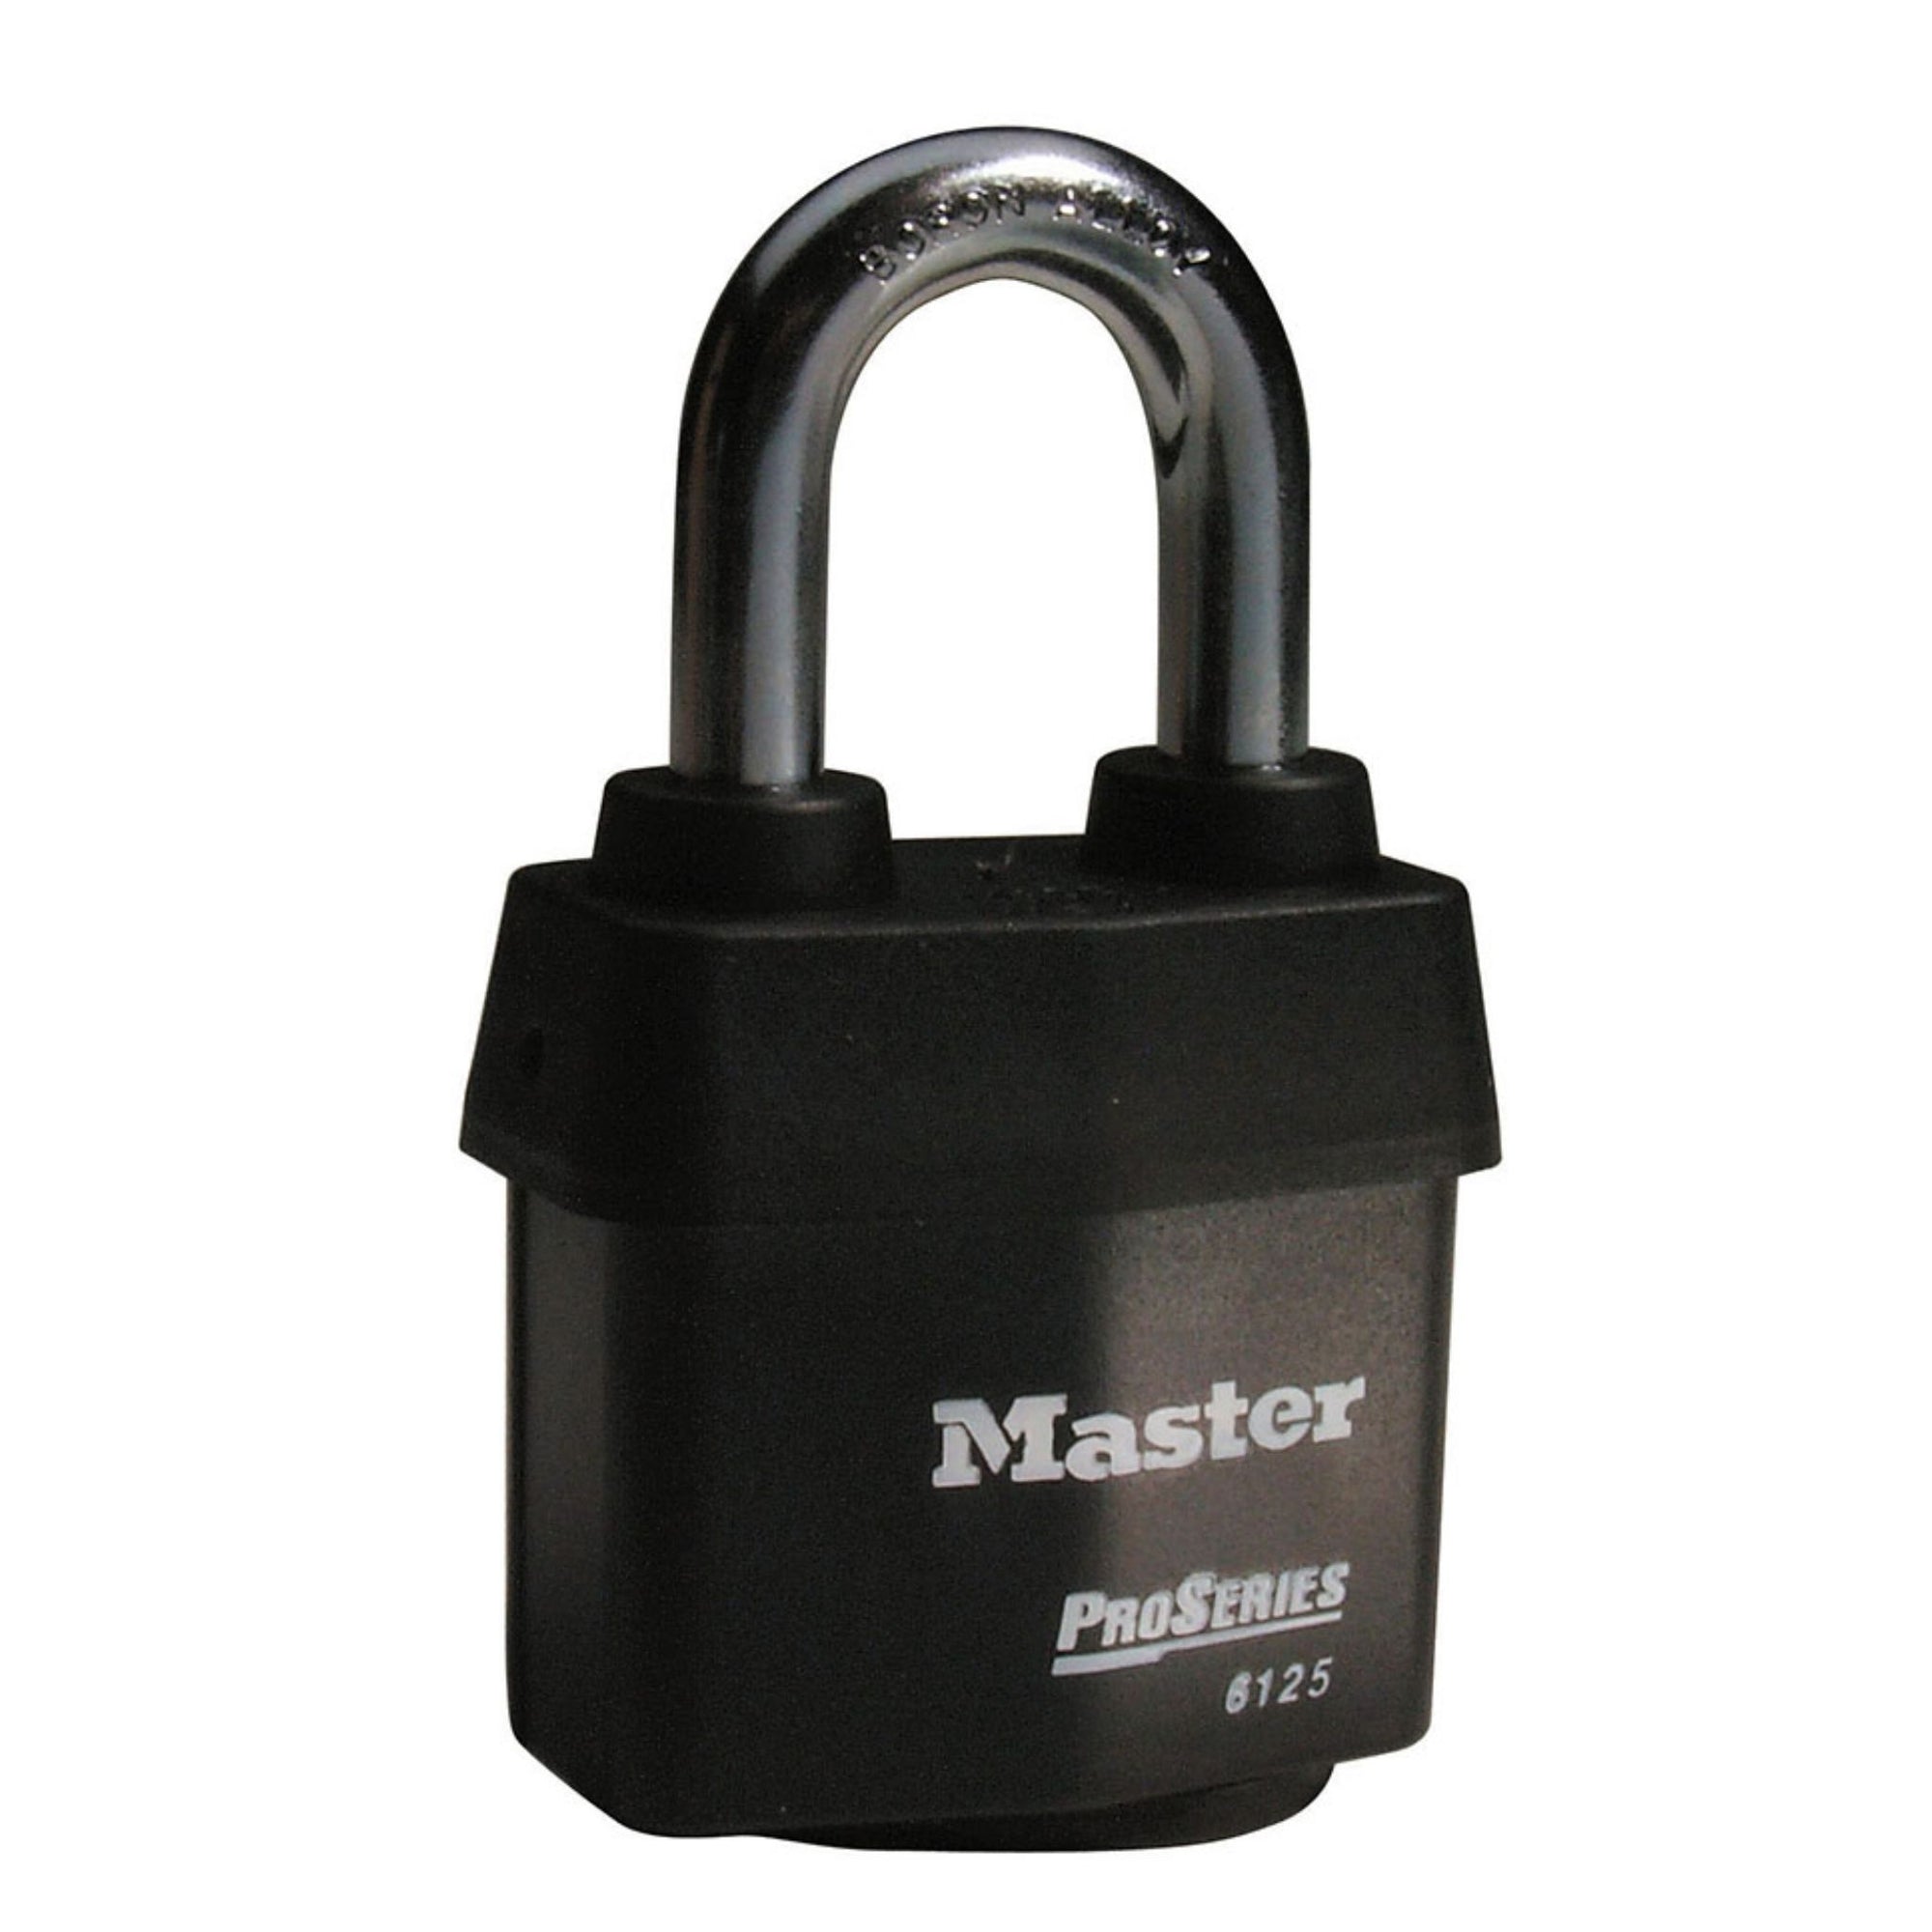 Master Lock 6125KA Pro Series Padlock Keyed Alike Locks - The Lock Source